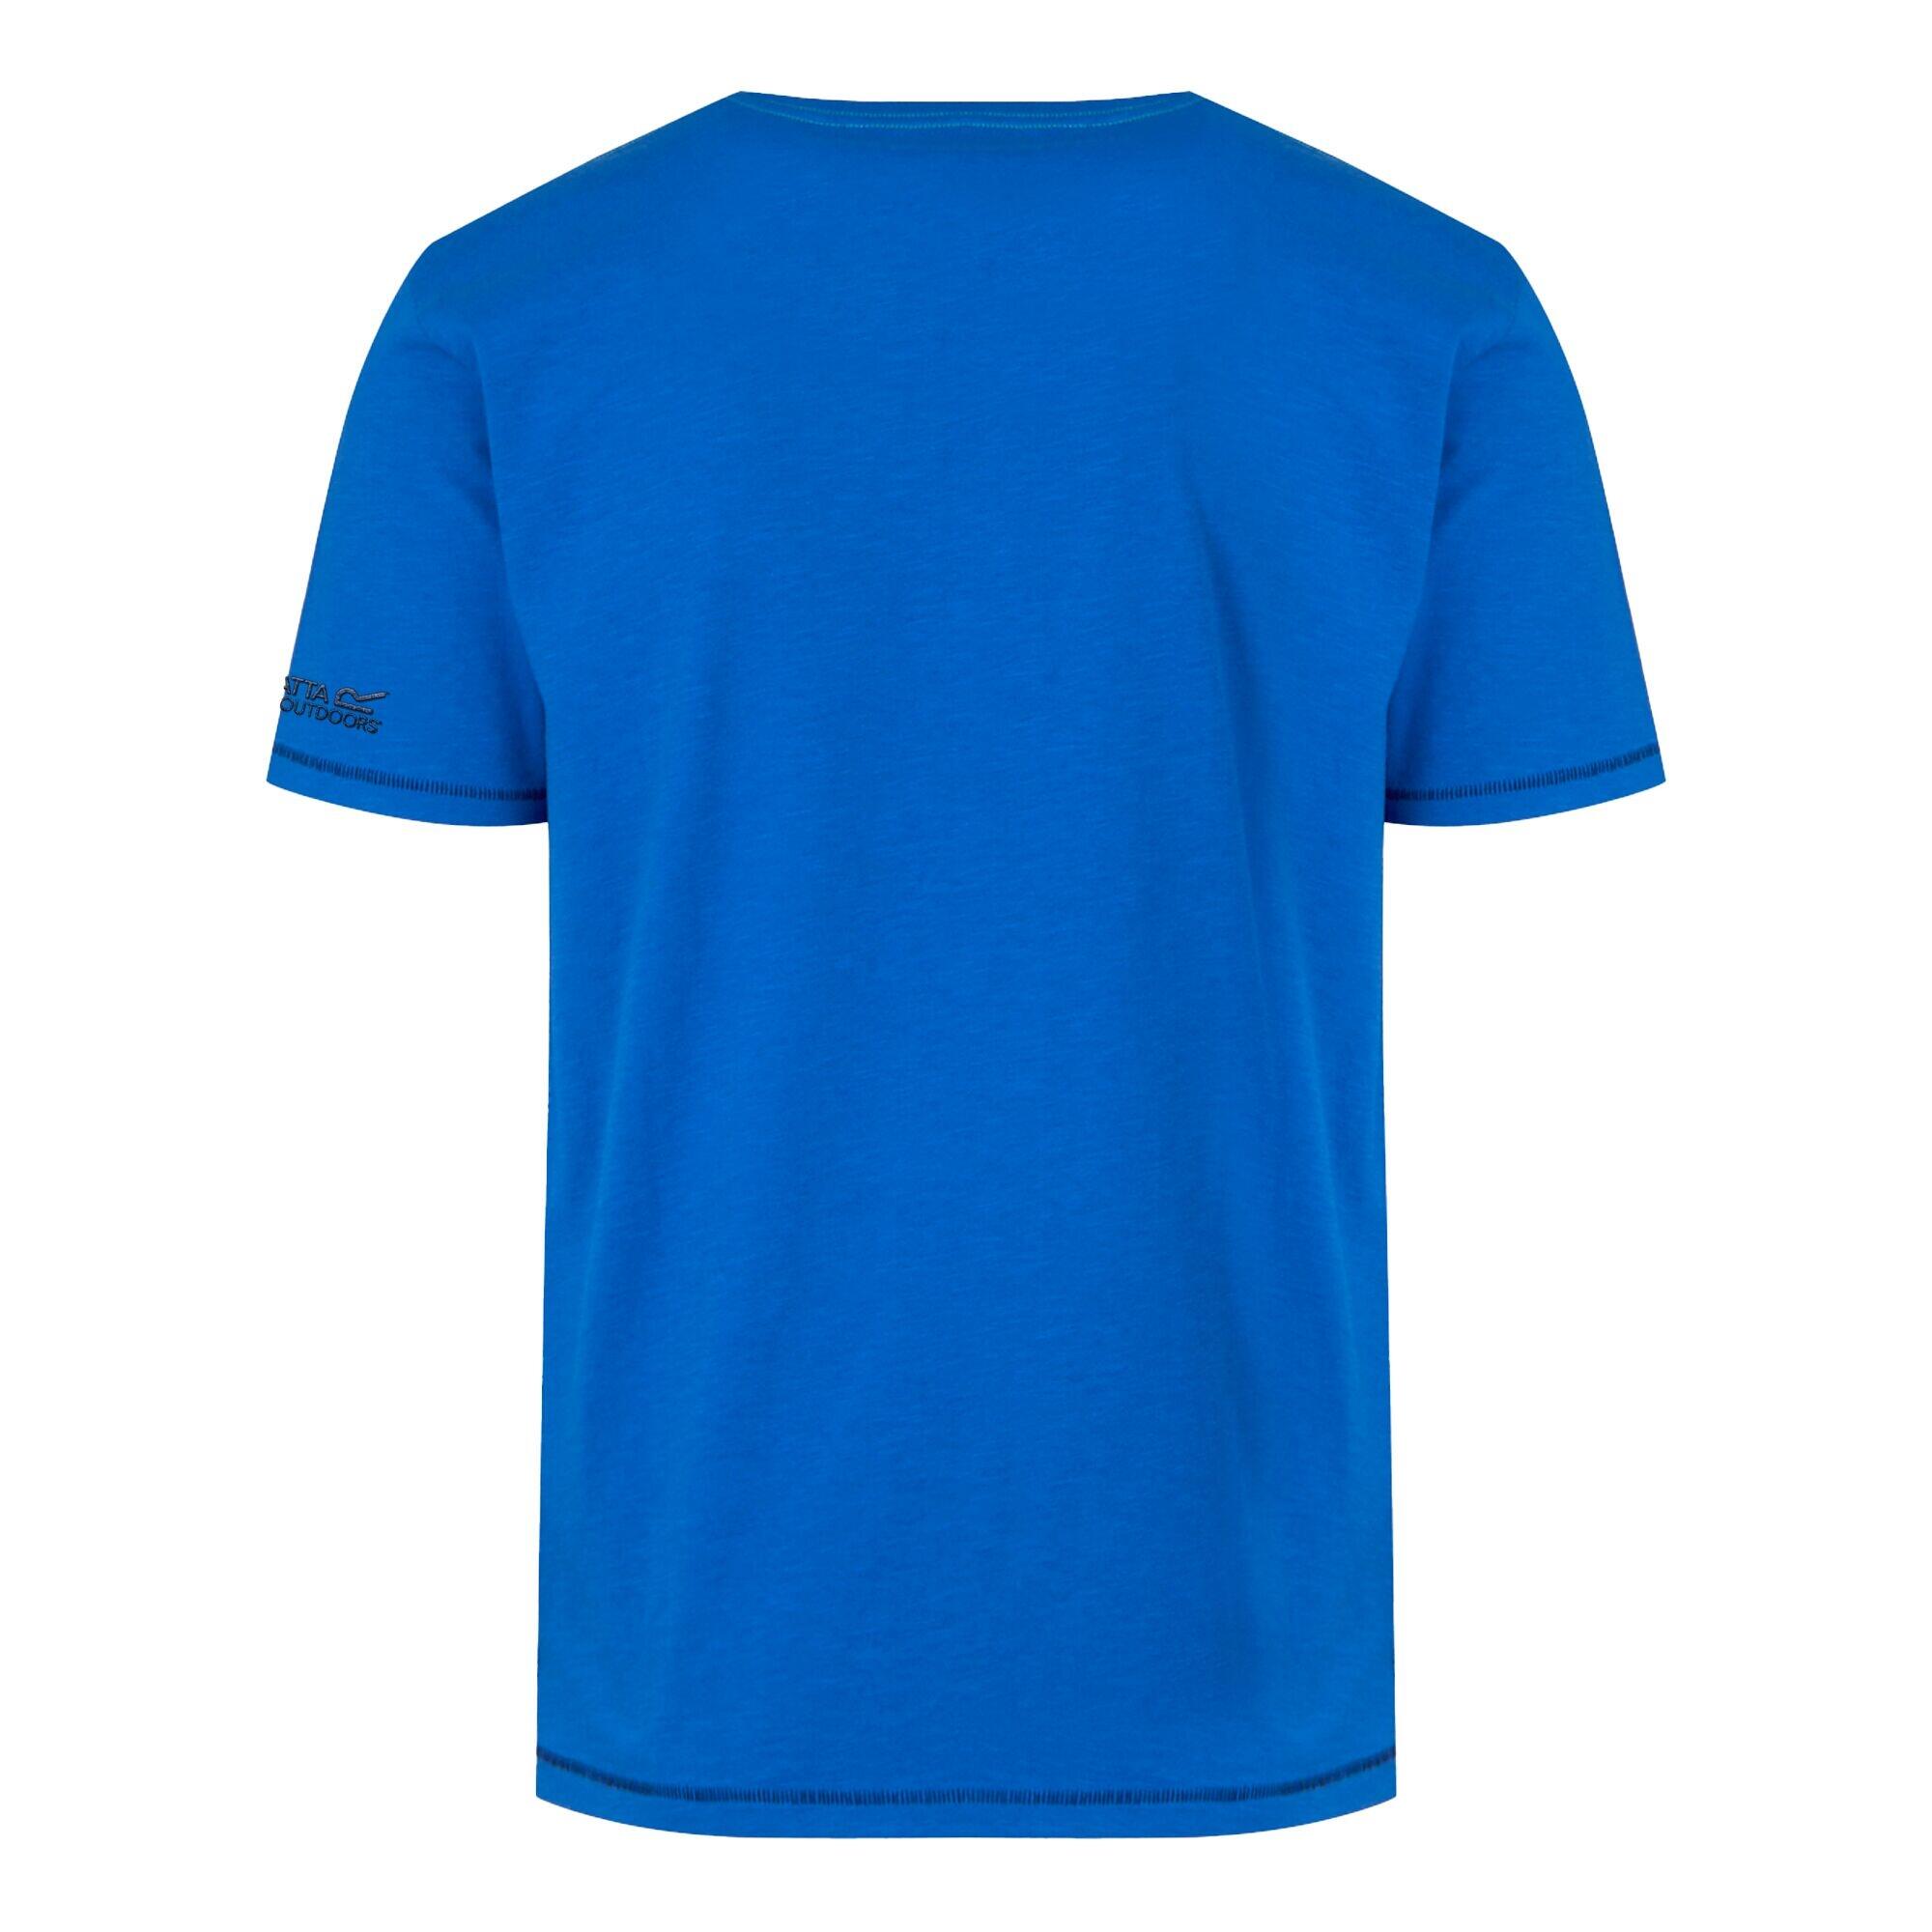 Mens Rayonner TShirt (Oxford Blue) 2/4